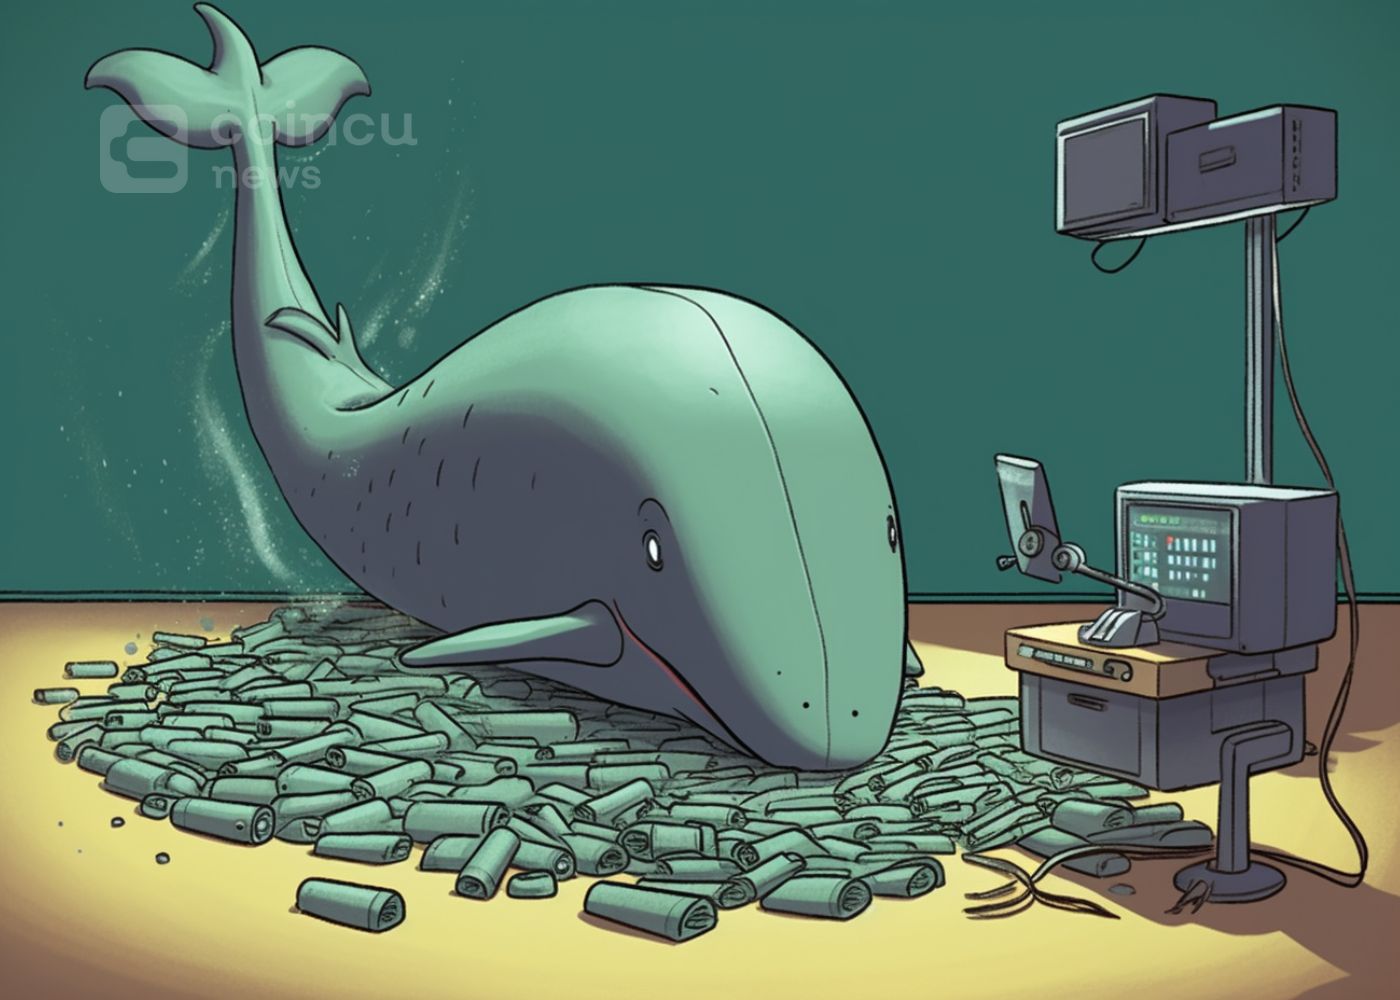 100% 승률을 자랑하는 Smart Whale ETH, 40일 만에 15천만 달러 인출